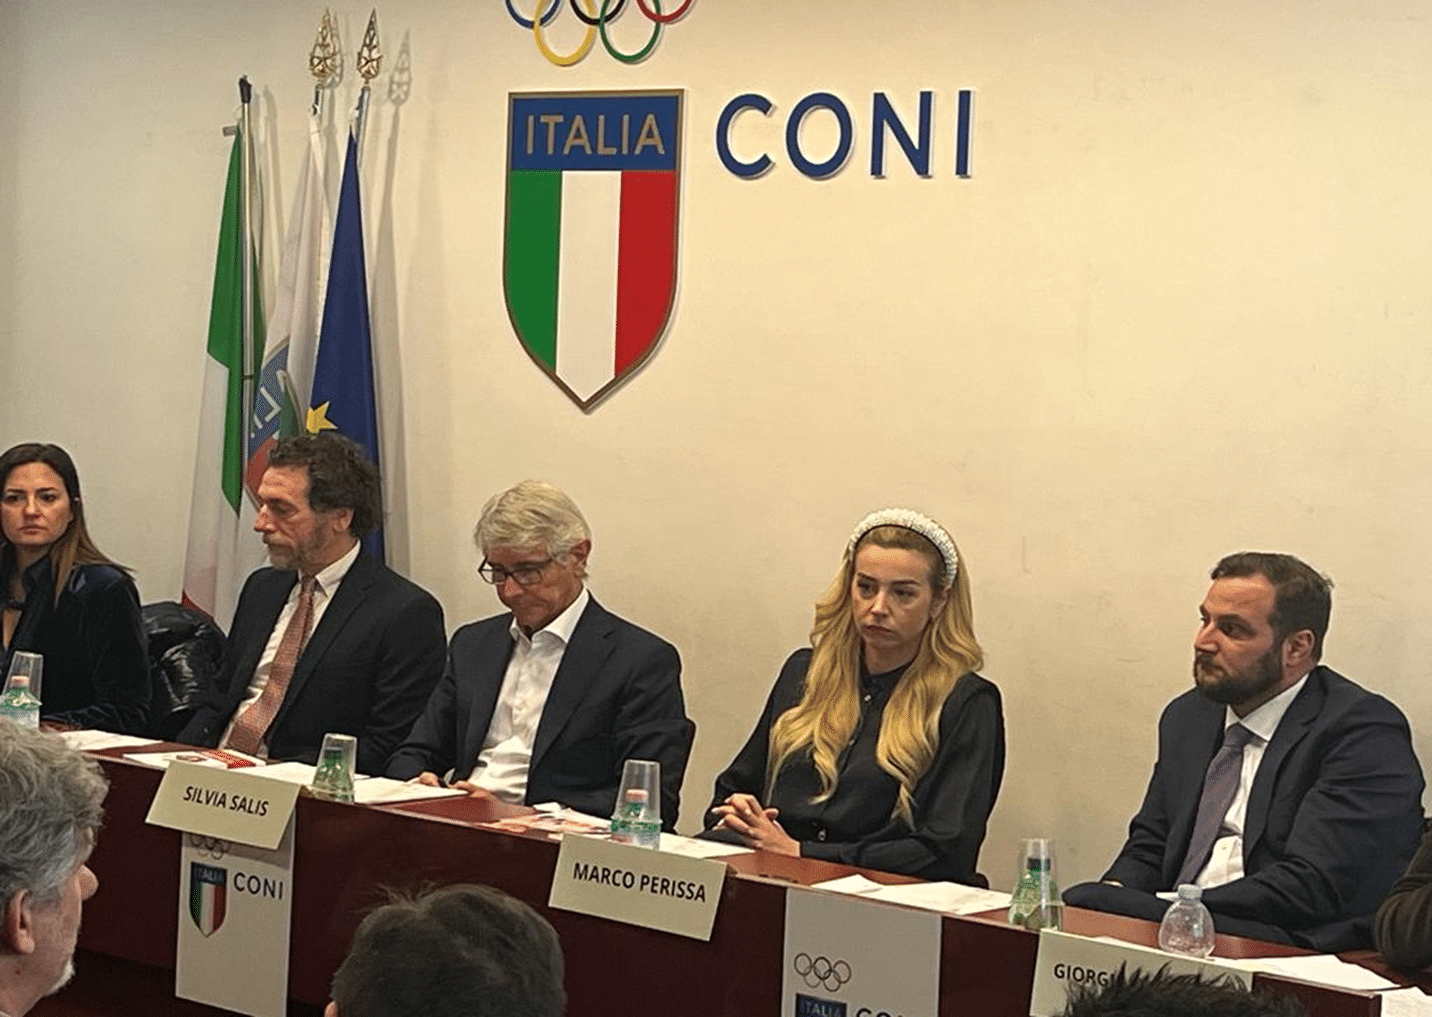 Quaser certifikacija: Talijanski nacionalni olimpijski odbor potvrdio svoj interes za certifikaciju protiv uznemiravanja u sportskim disciplinama